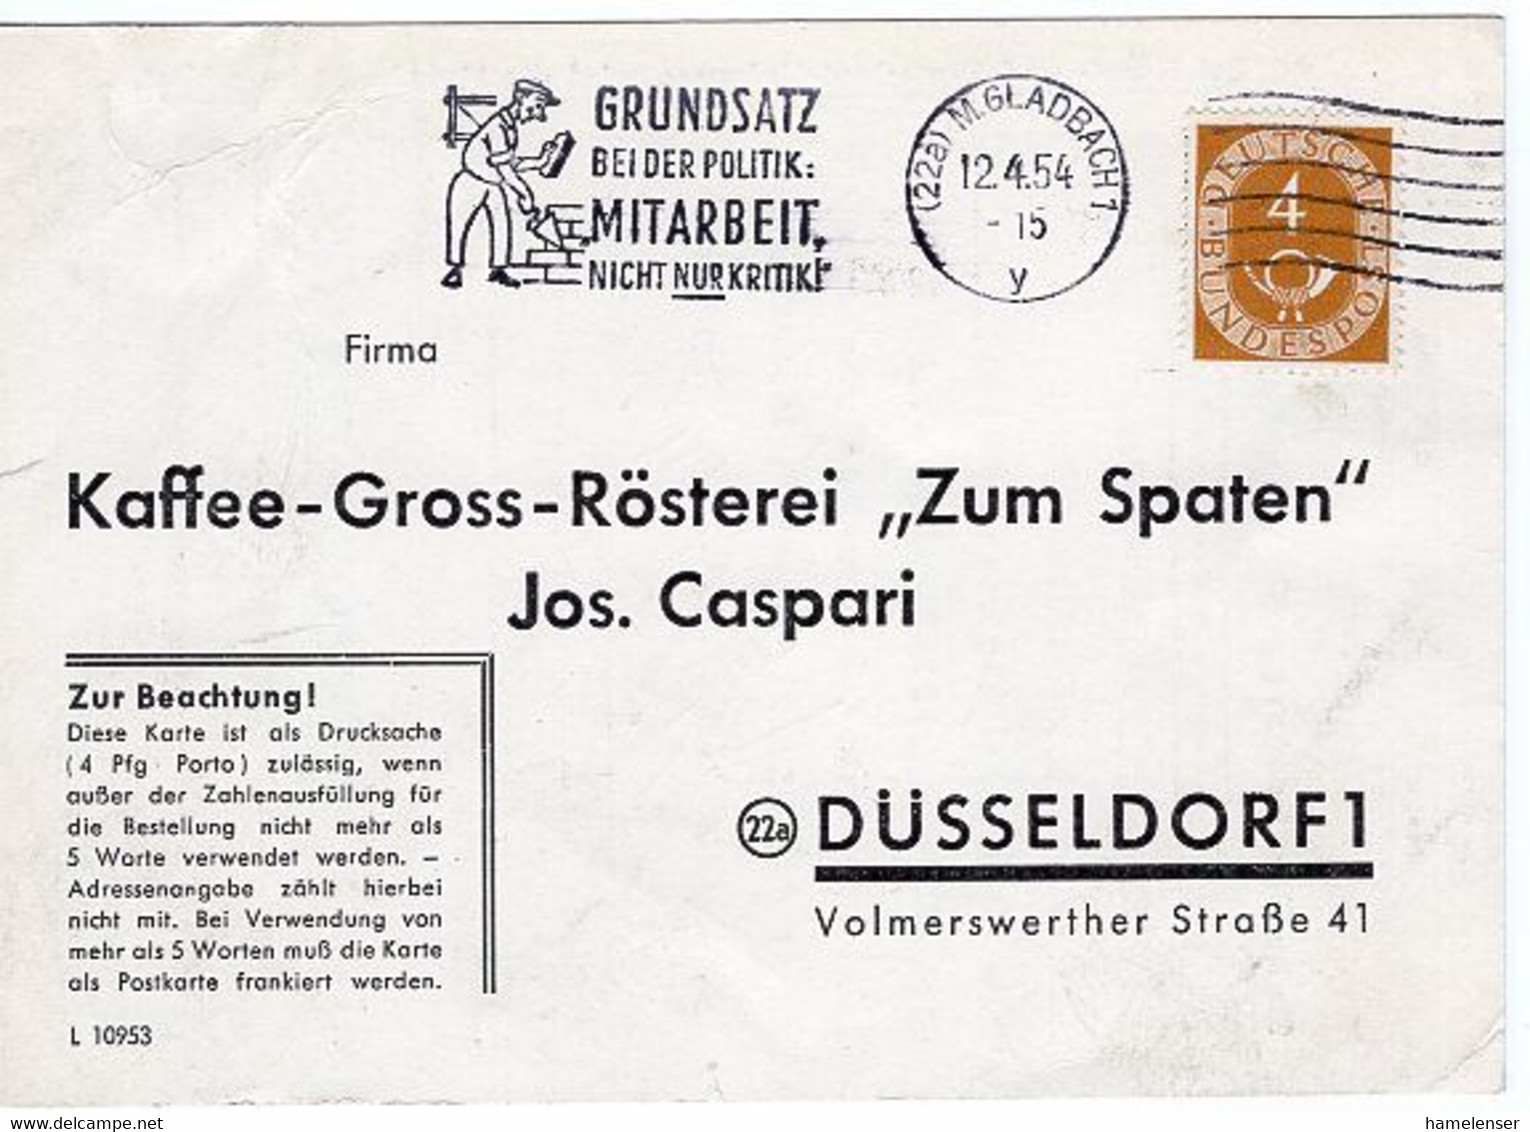 51182 - Bund - 1954 - 4Pfg. Posthorn A DrucksKte M.GLADBACH - GRUNDSATZ BEI DER POLITIK ... -> Duesseldorf - Covers & Documents